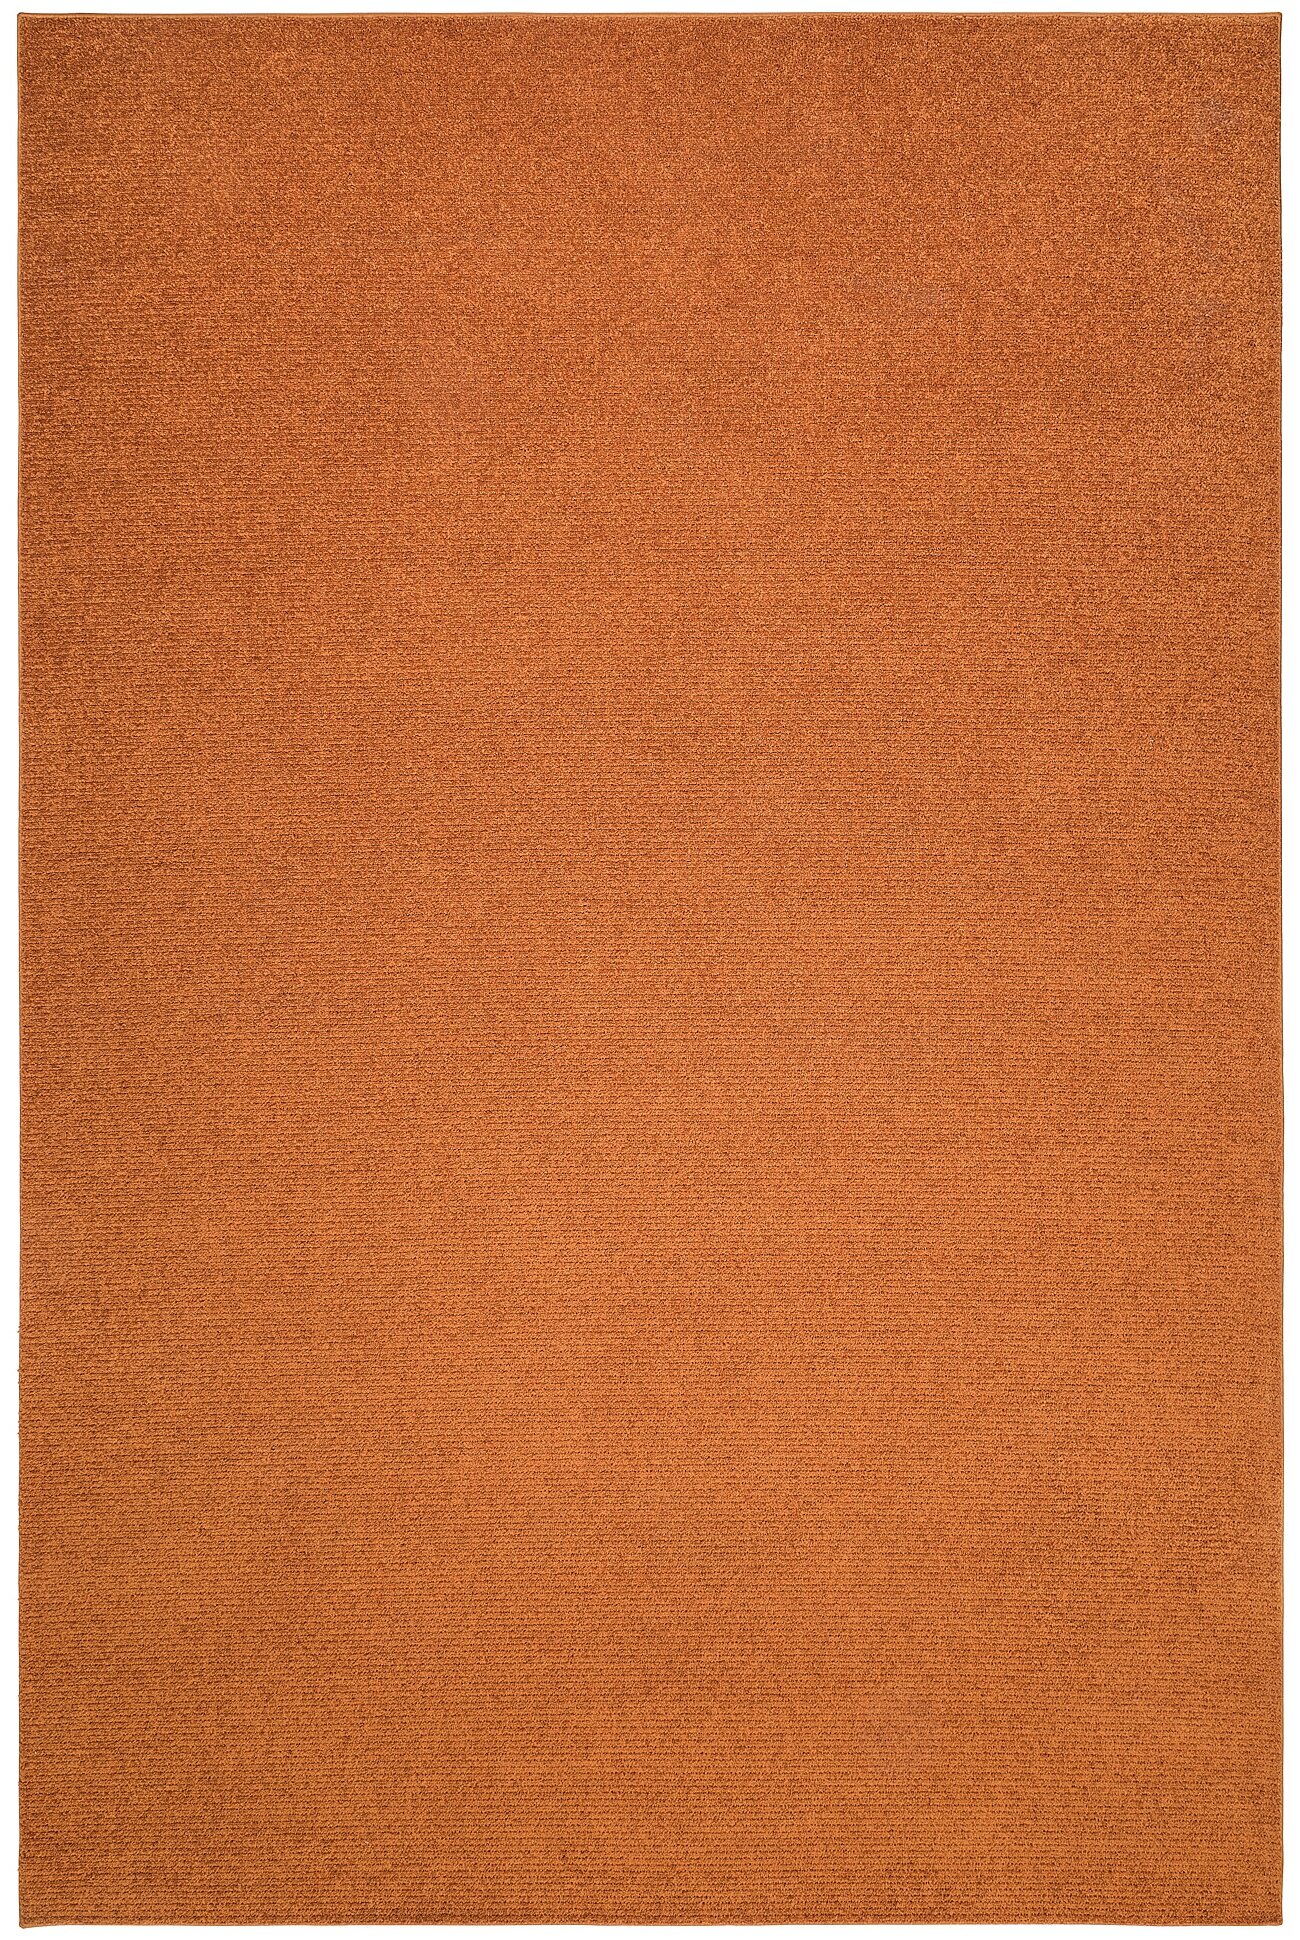 SPORUP споруп ковер, короткий ворс 200x300 см коричневый - фотография № 1